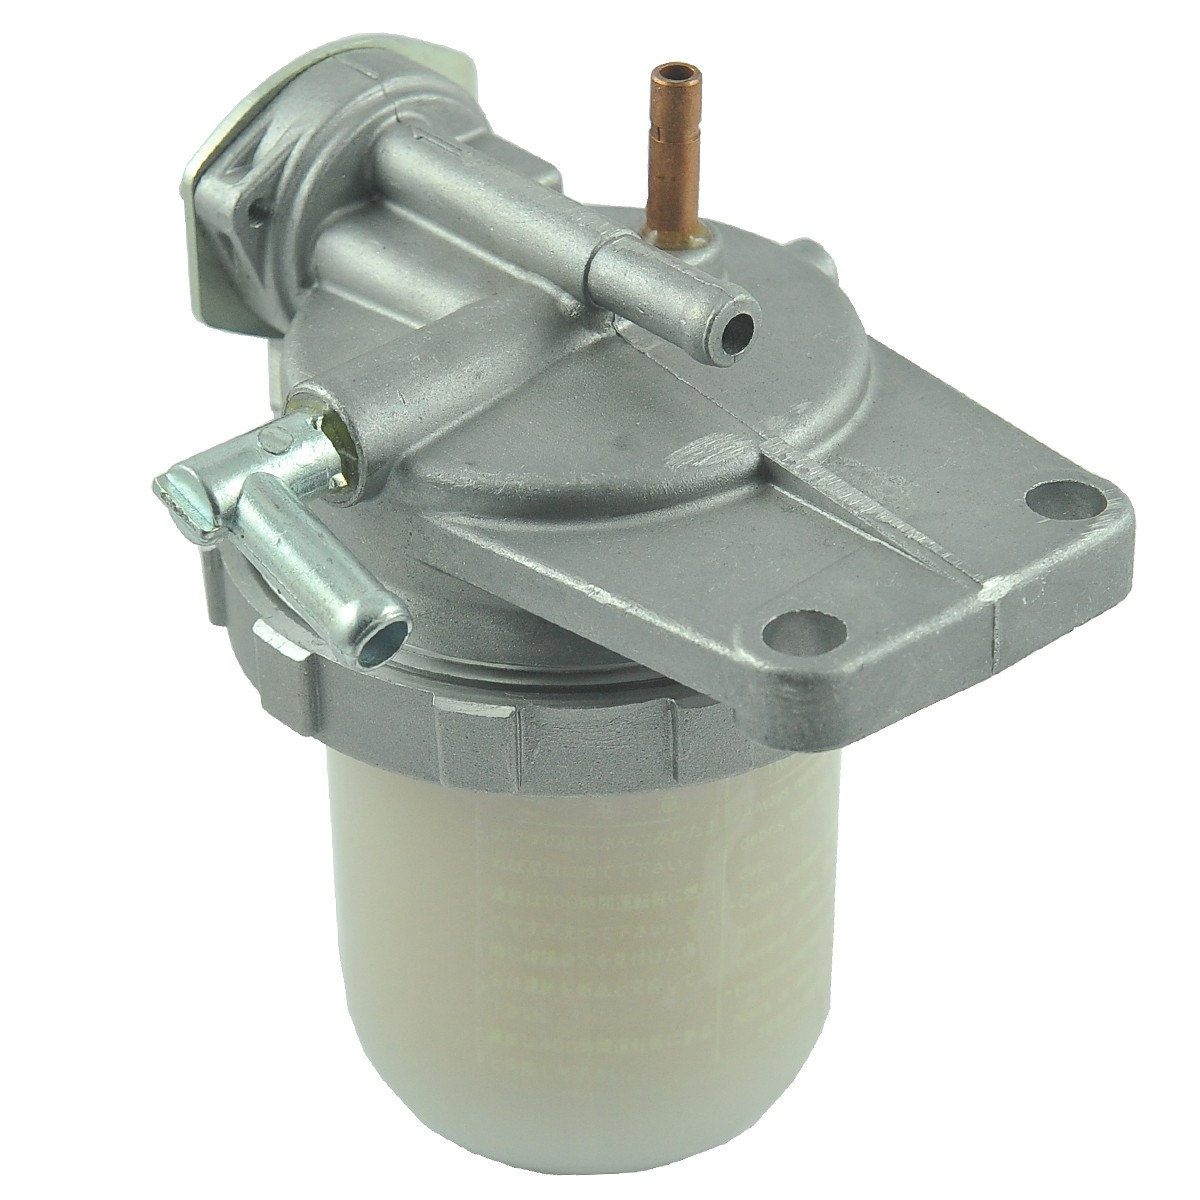 Fuel filter with tap and filter / Kubota L275/L1802/L3408 / Kubota GL19/GL21/GL25/GL26/GL27/GL29 / 1A001-43010 / 6-01-105-01